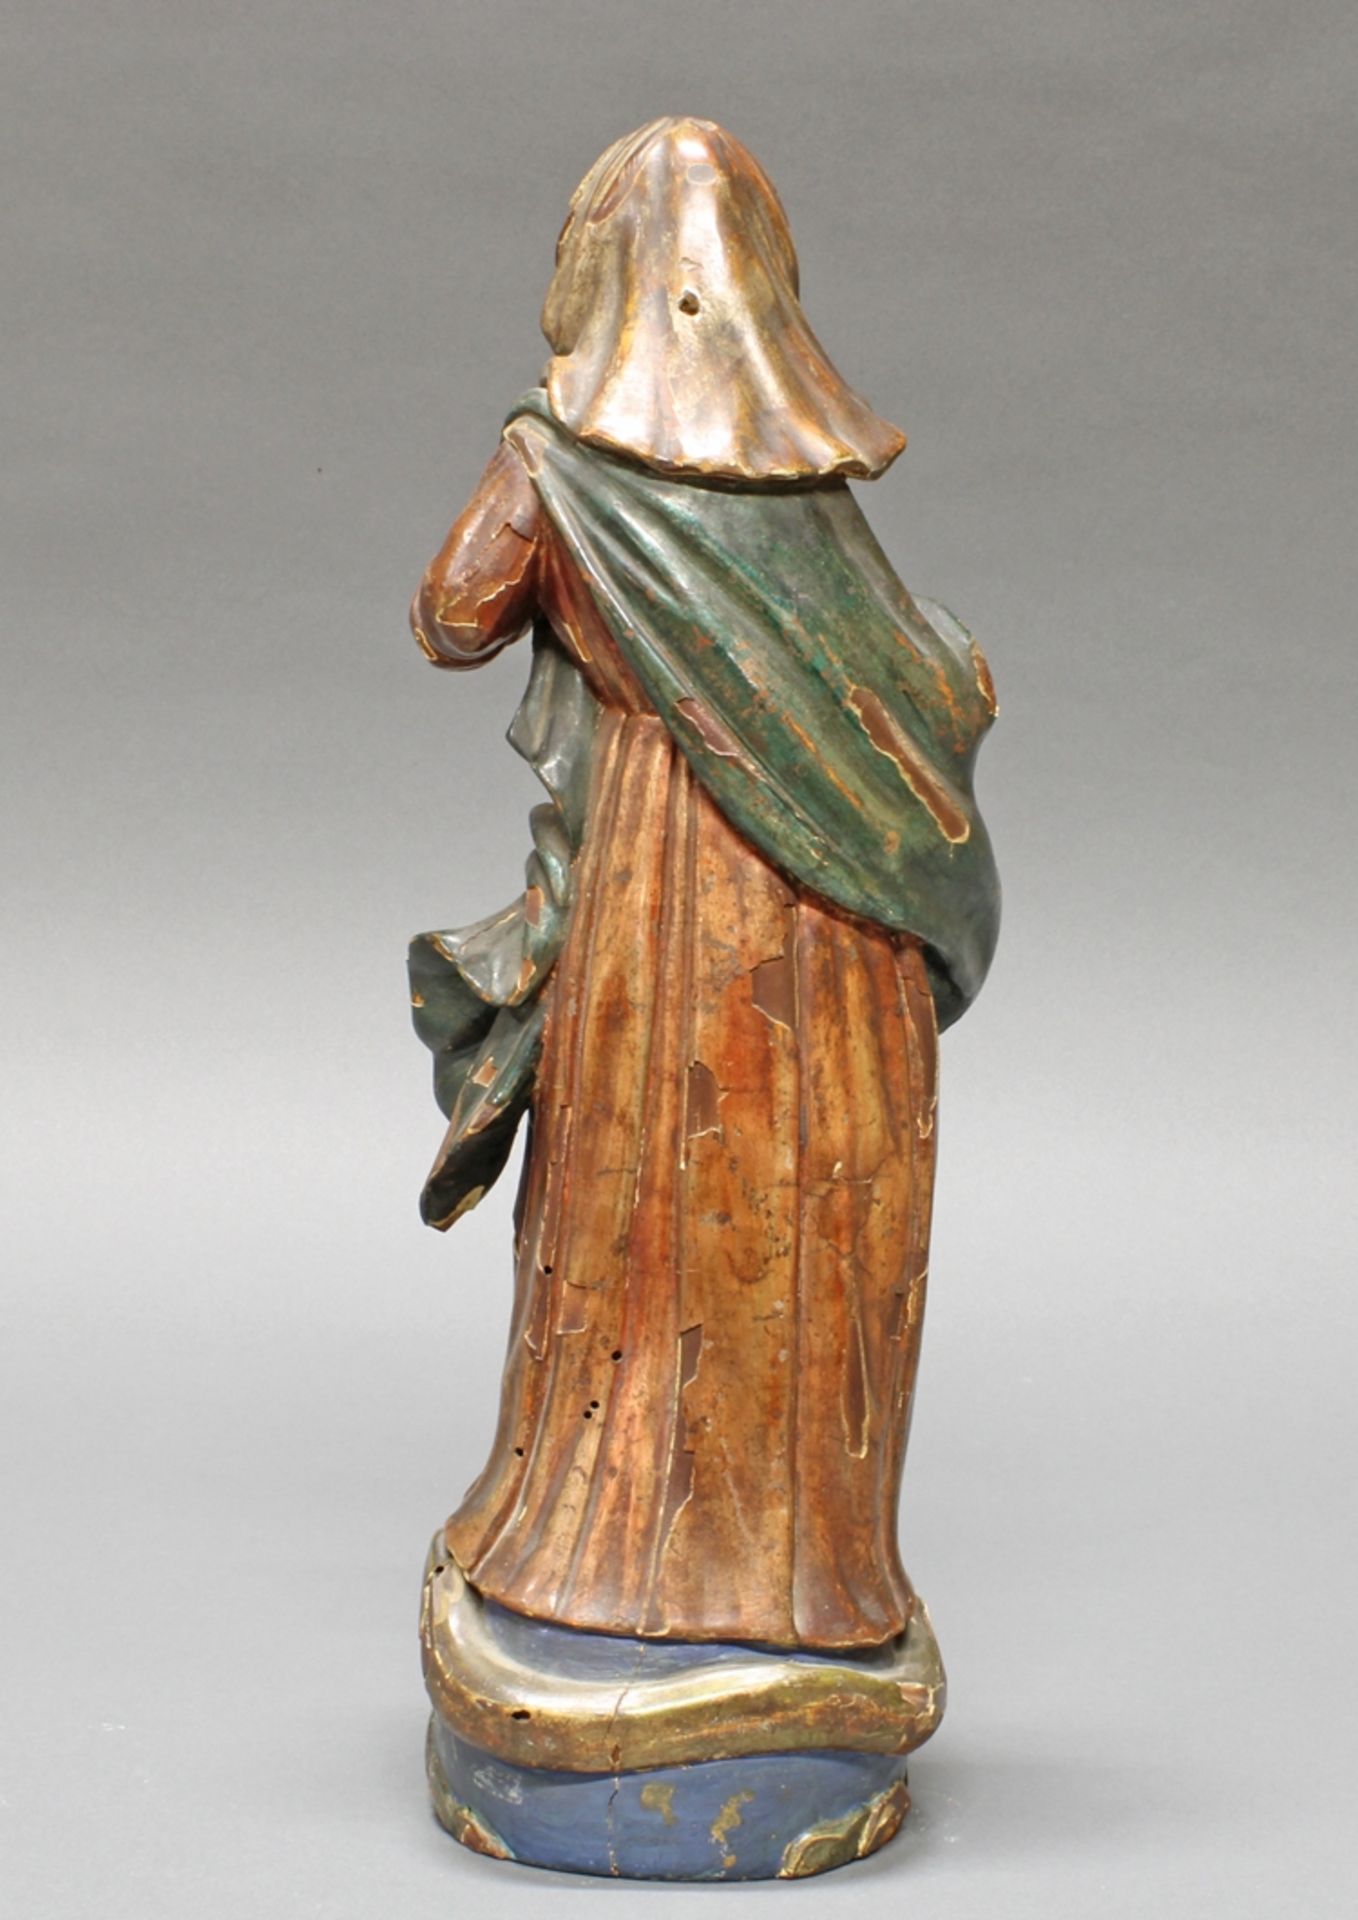 Skulptur, Holz geschnitzt, "Maria Immaculata", Italien, 18. Jh., H. 39 cm, alte Fassung an einigen  - Bild 2 aus 4